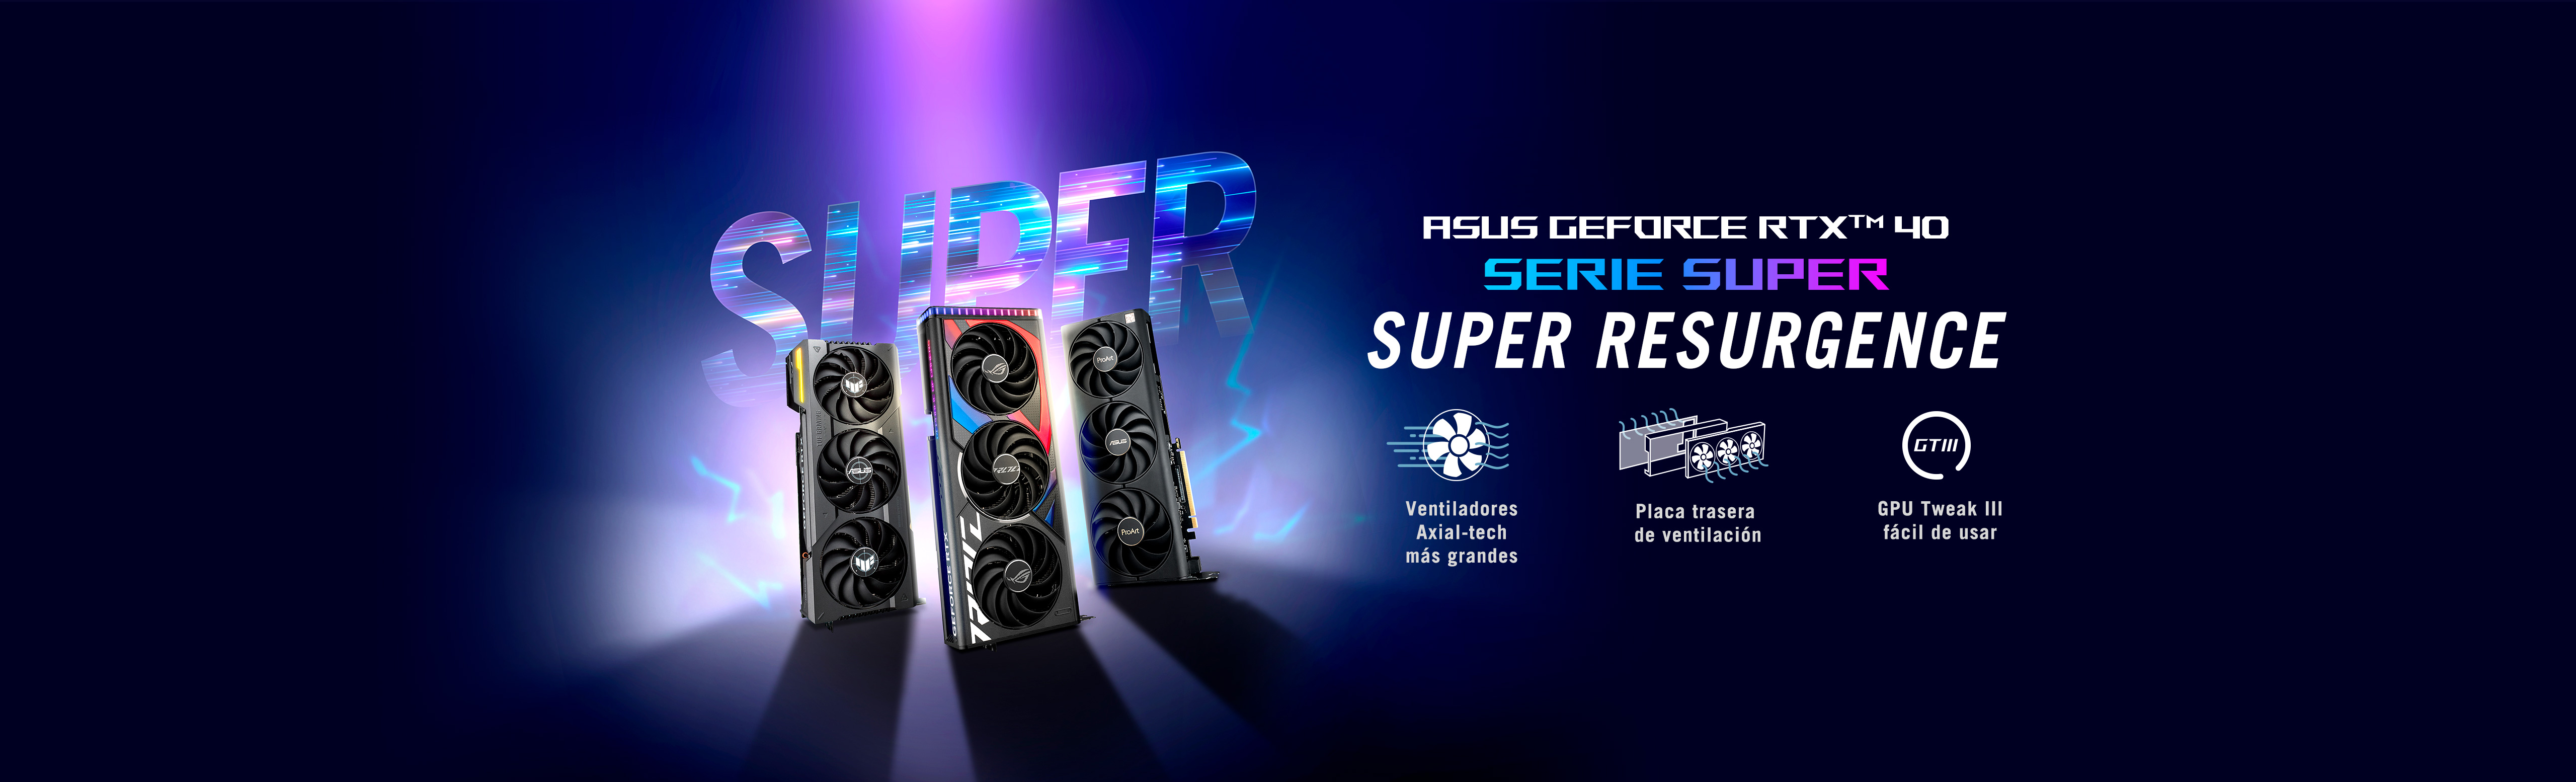 ASUS GeForce RTX™ 40 SUPER SERIES - SUPER RESURGENCE, con ventiladores Axial-tech más grandes, placa posterior ventilada y GPU Tweak III fácil de usar